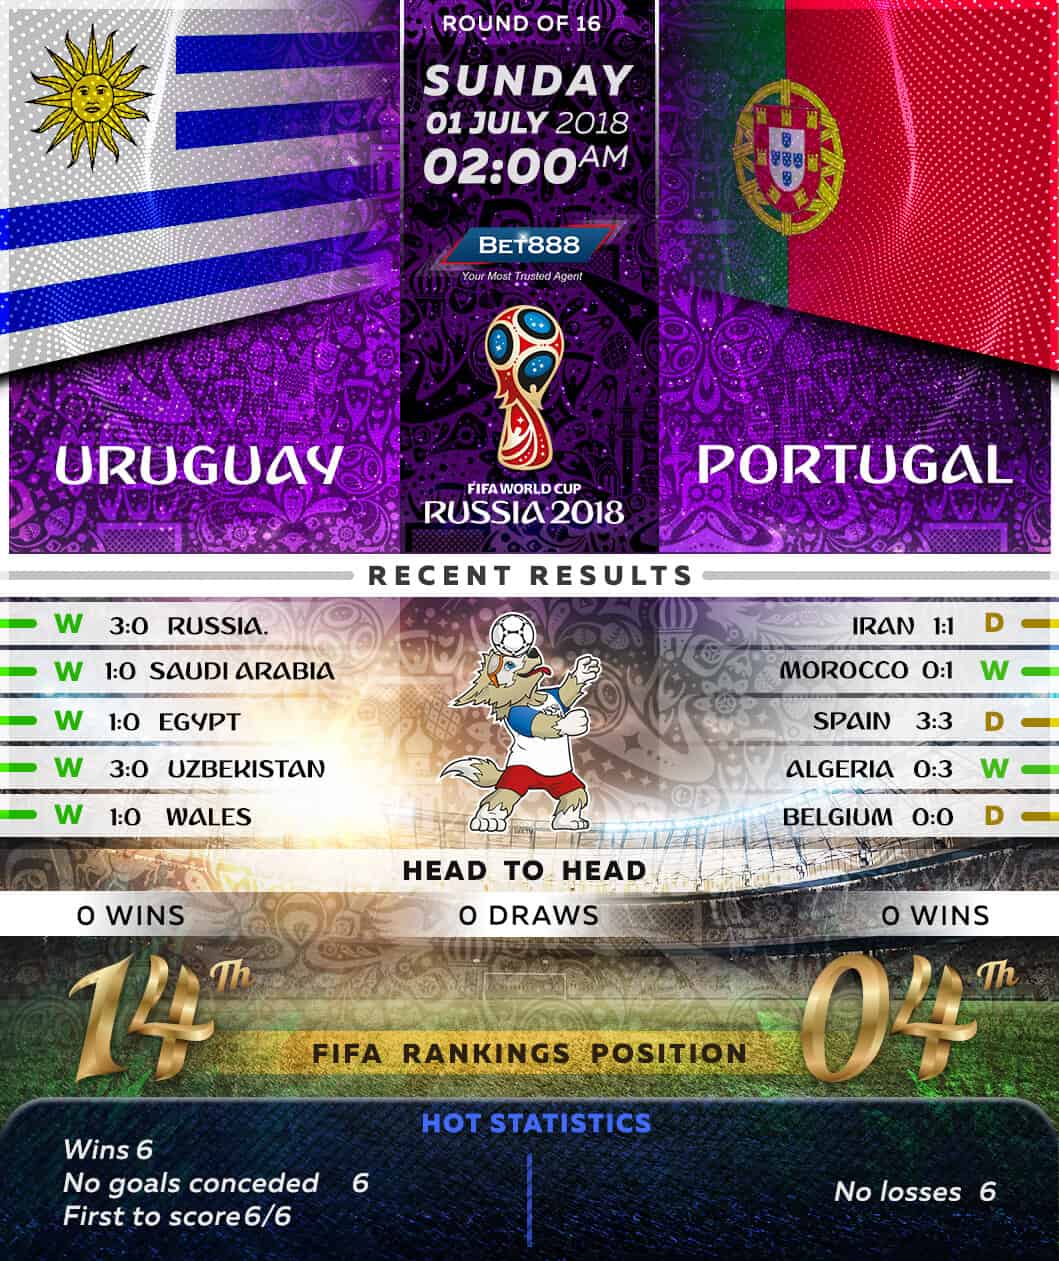 Uruguay vs Portugal 01/07/18